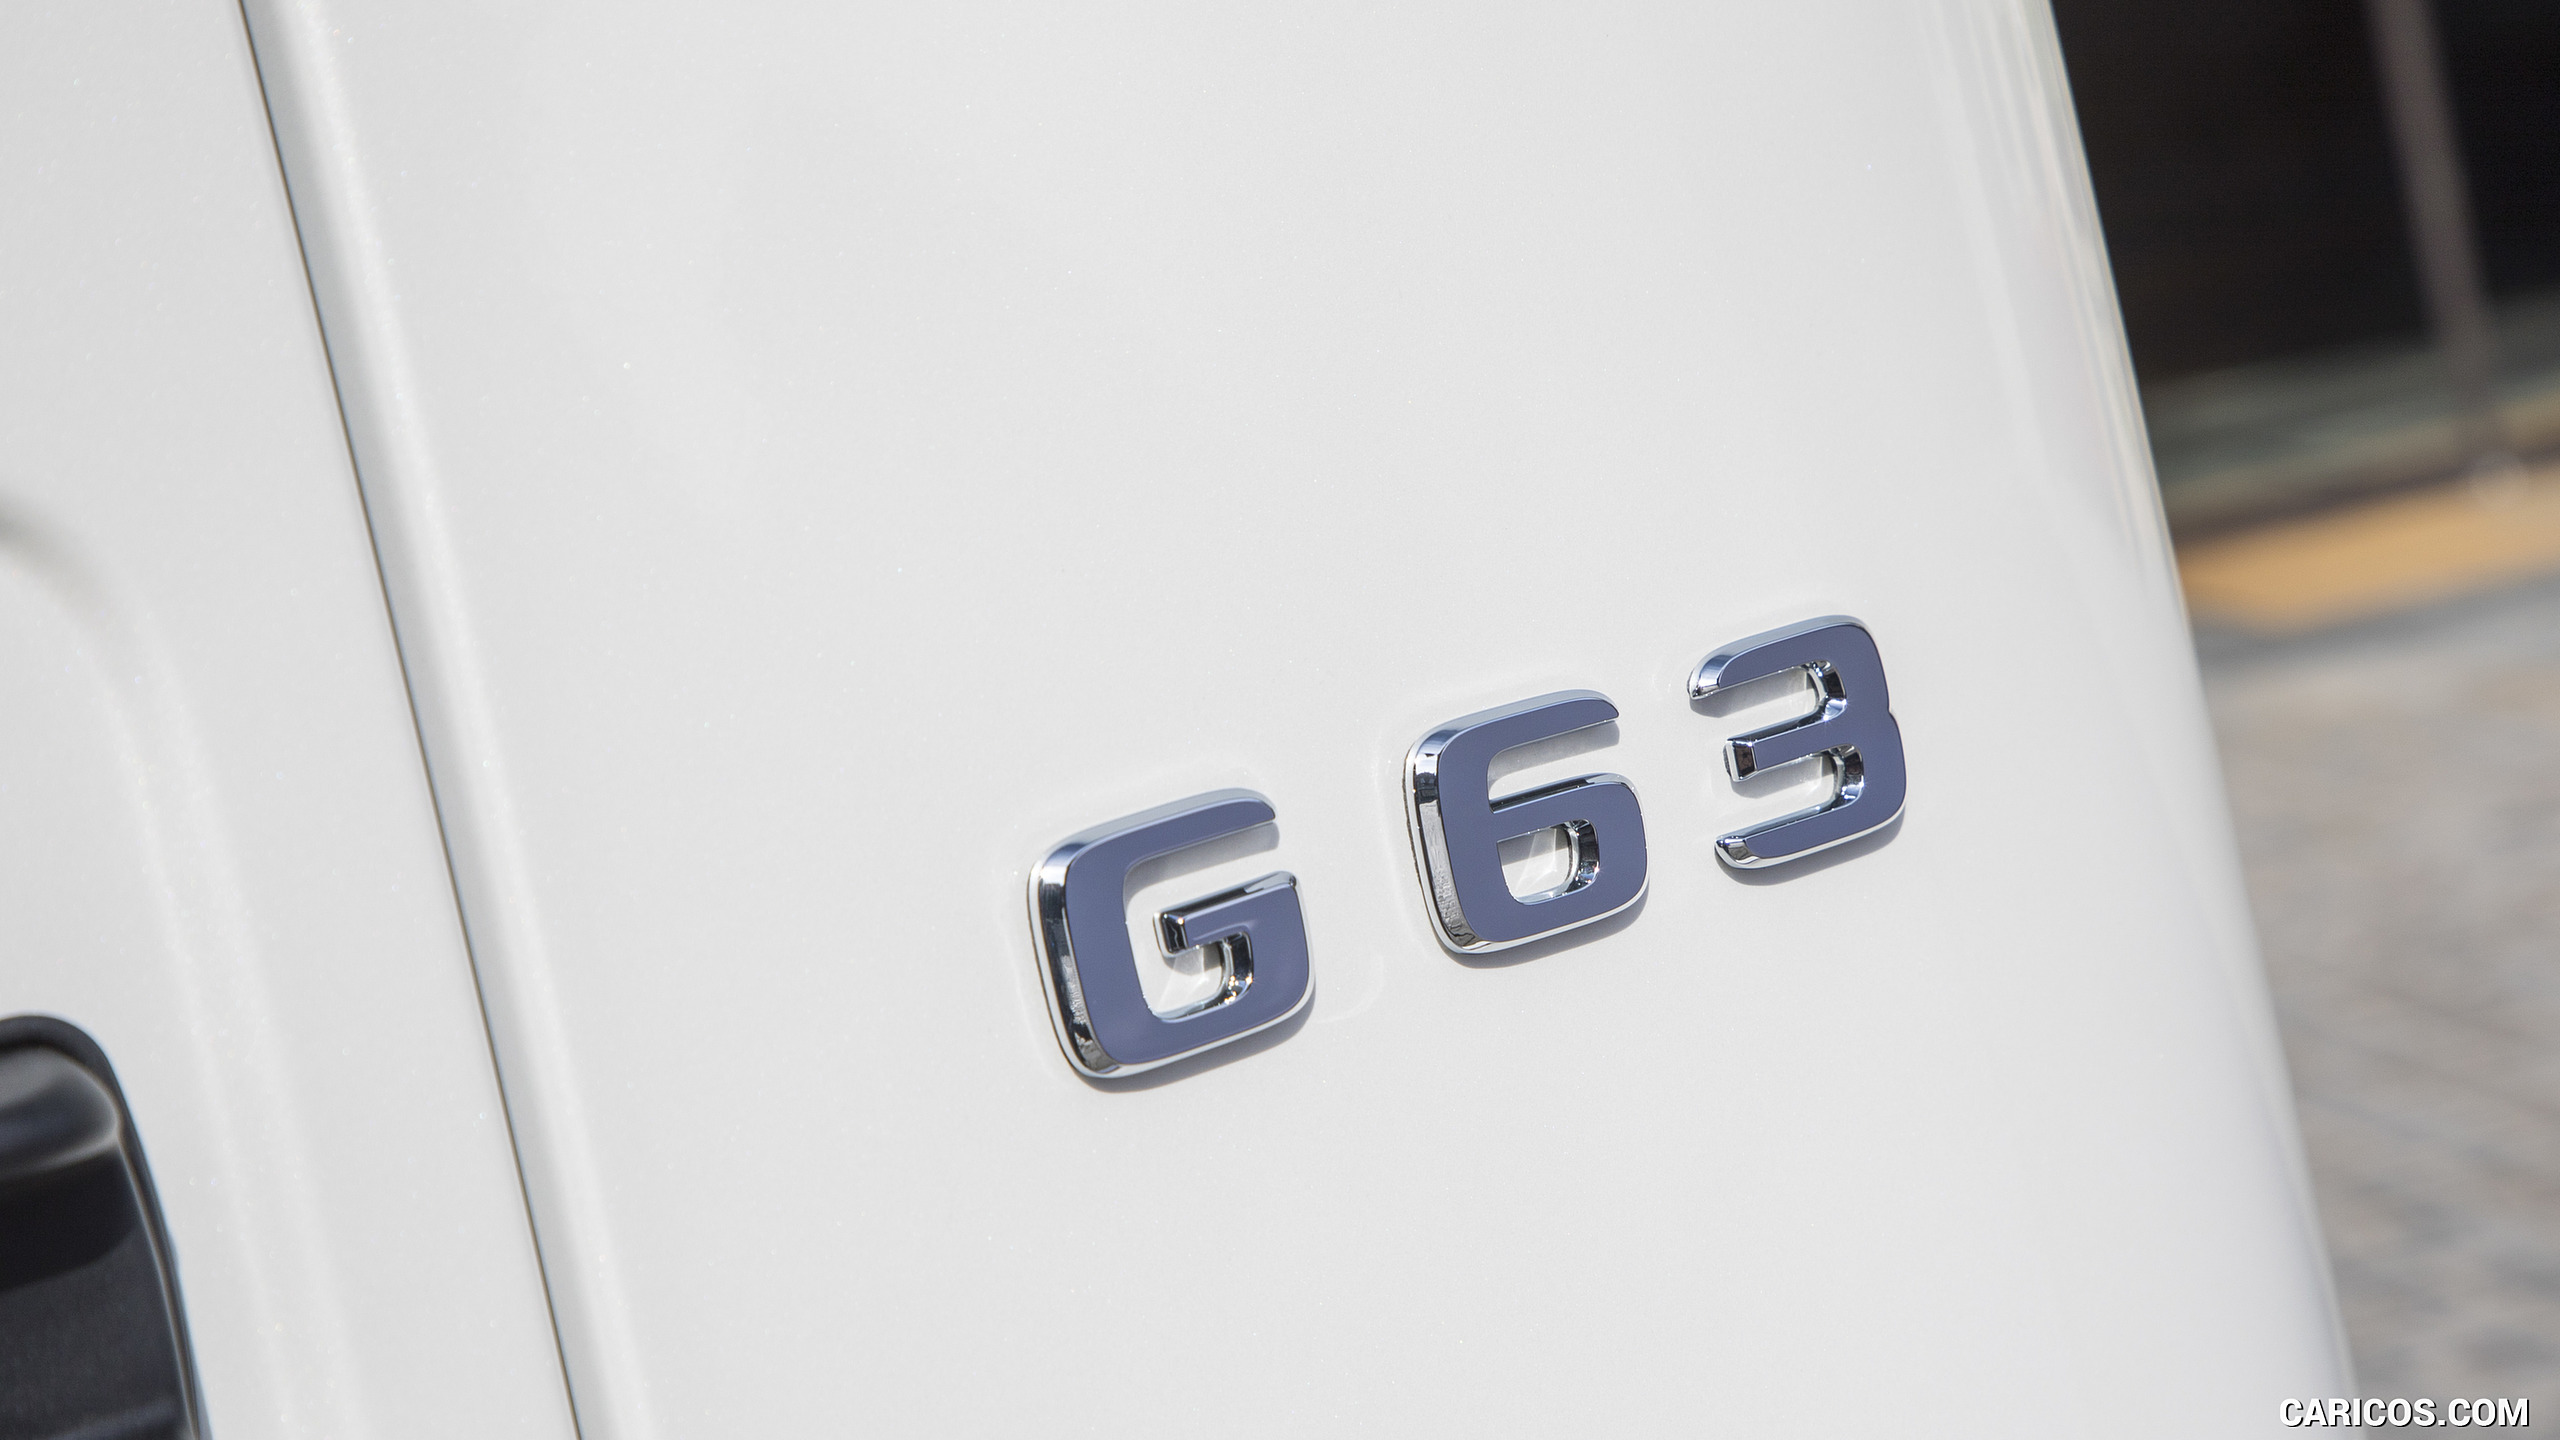 2019 Mercedes-AMG G63 (Color: Designo Diamond White Bright) - Badge, #114 of 452